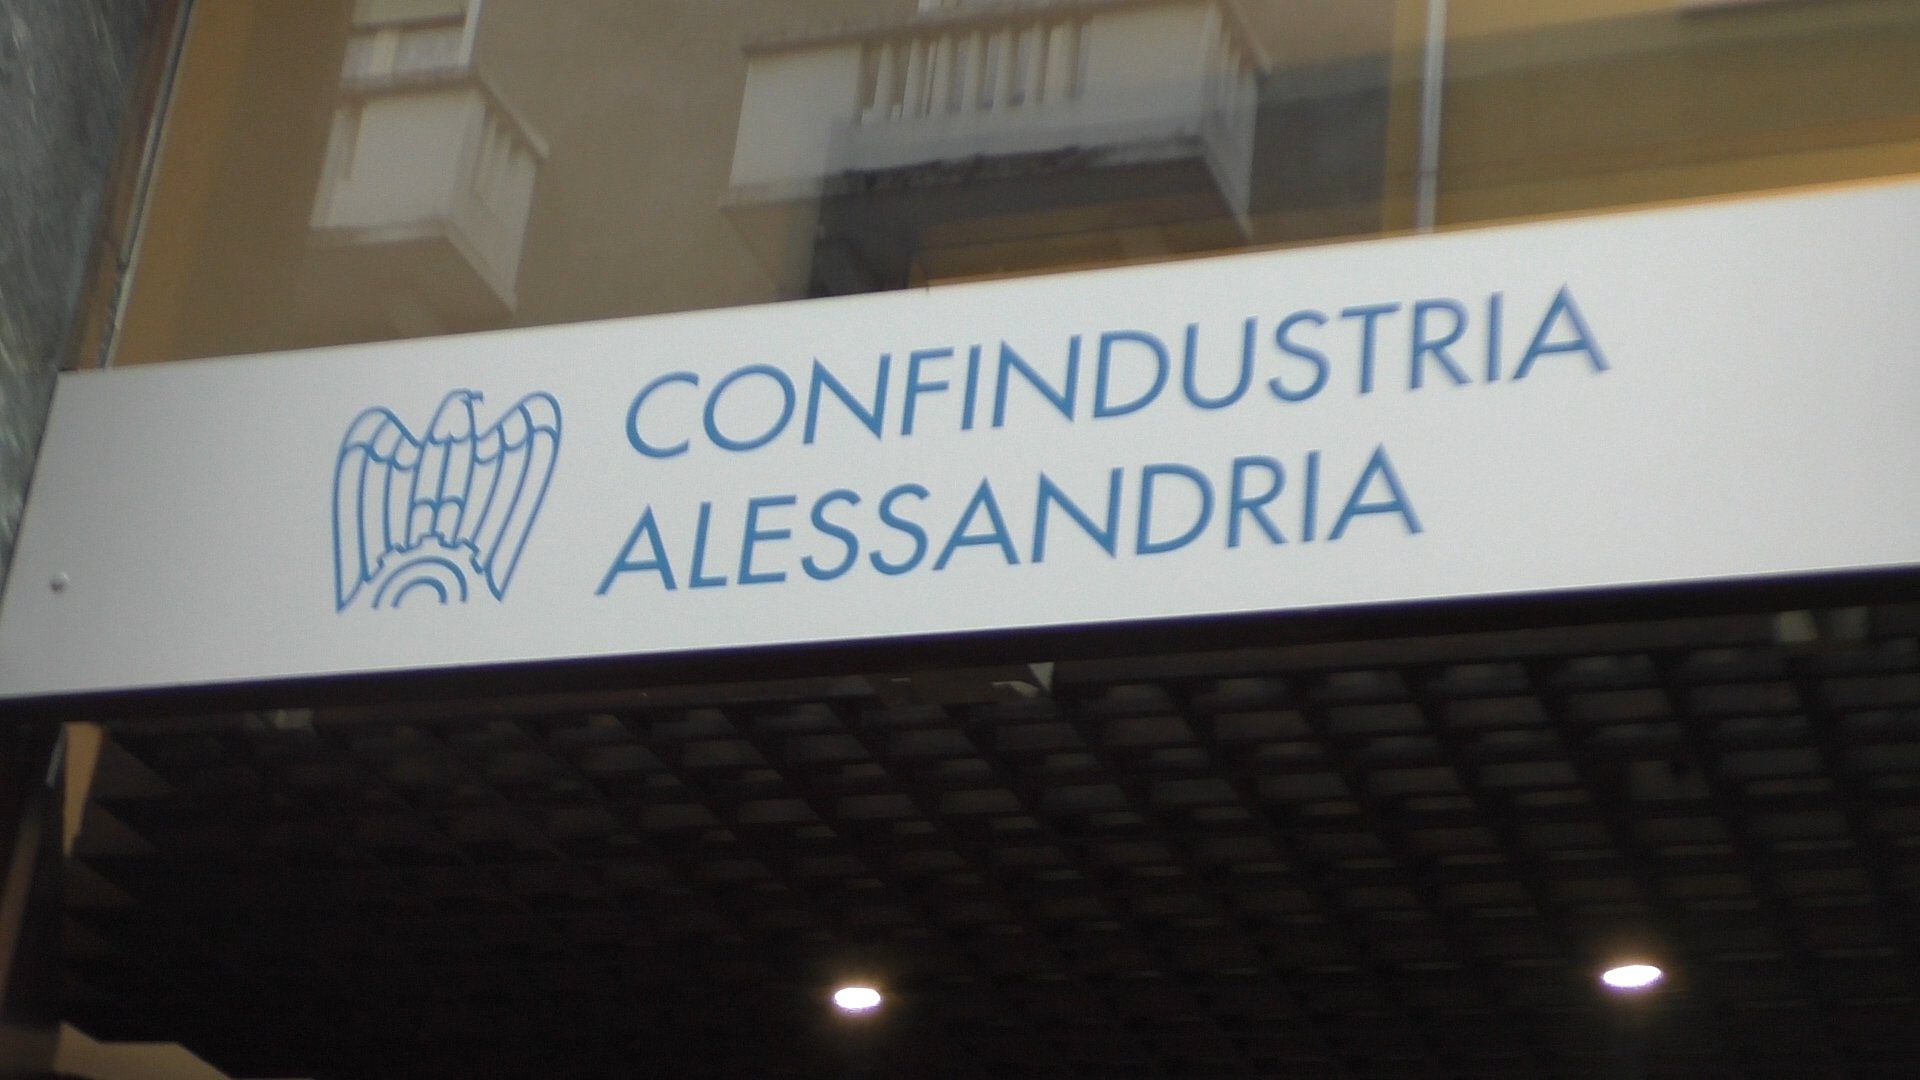 Confindustria Alessandria: “Dati positivi ma resta il problema del reperimento materie prime”